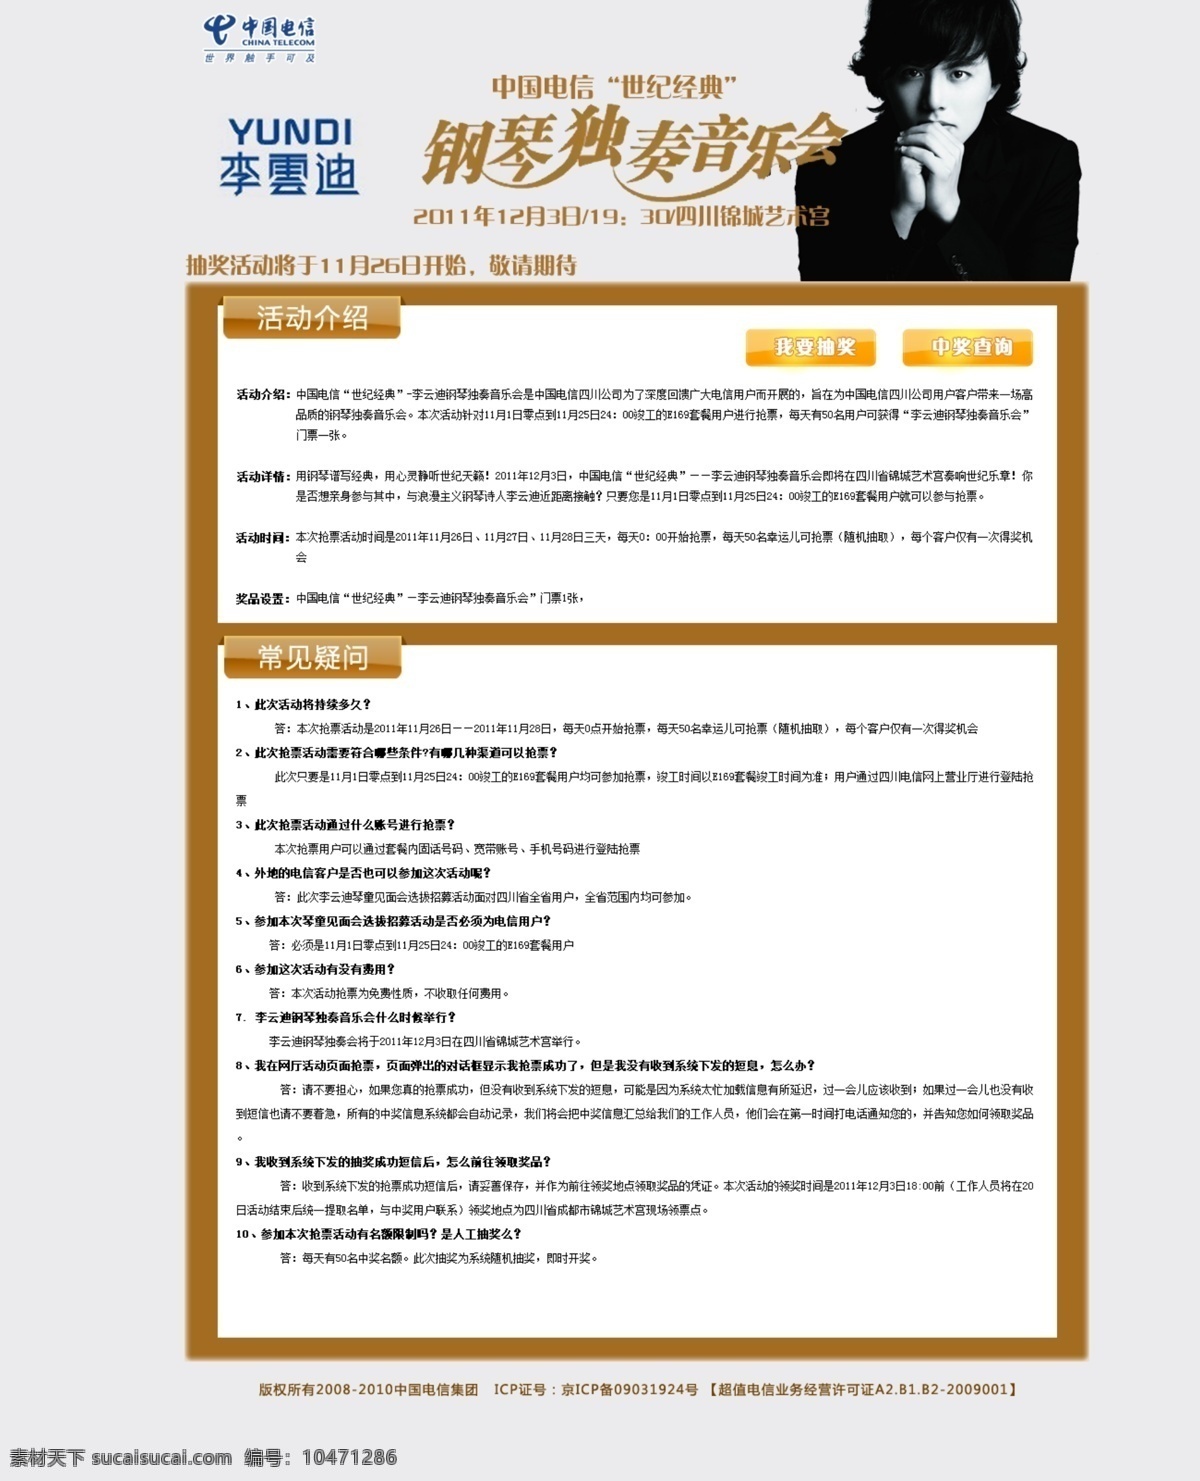 李云迪 钢琴 独奏 音乐会 活动介绍 我要抽奖 中国电信活动 中文模版 网页模板 源文件